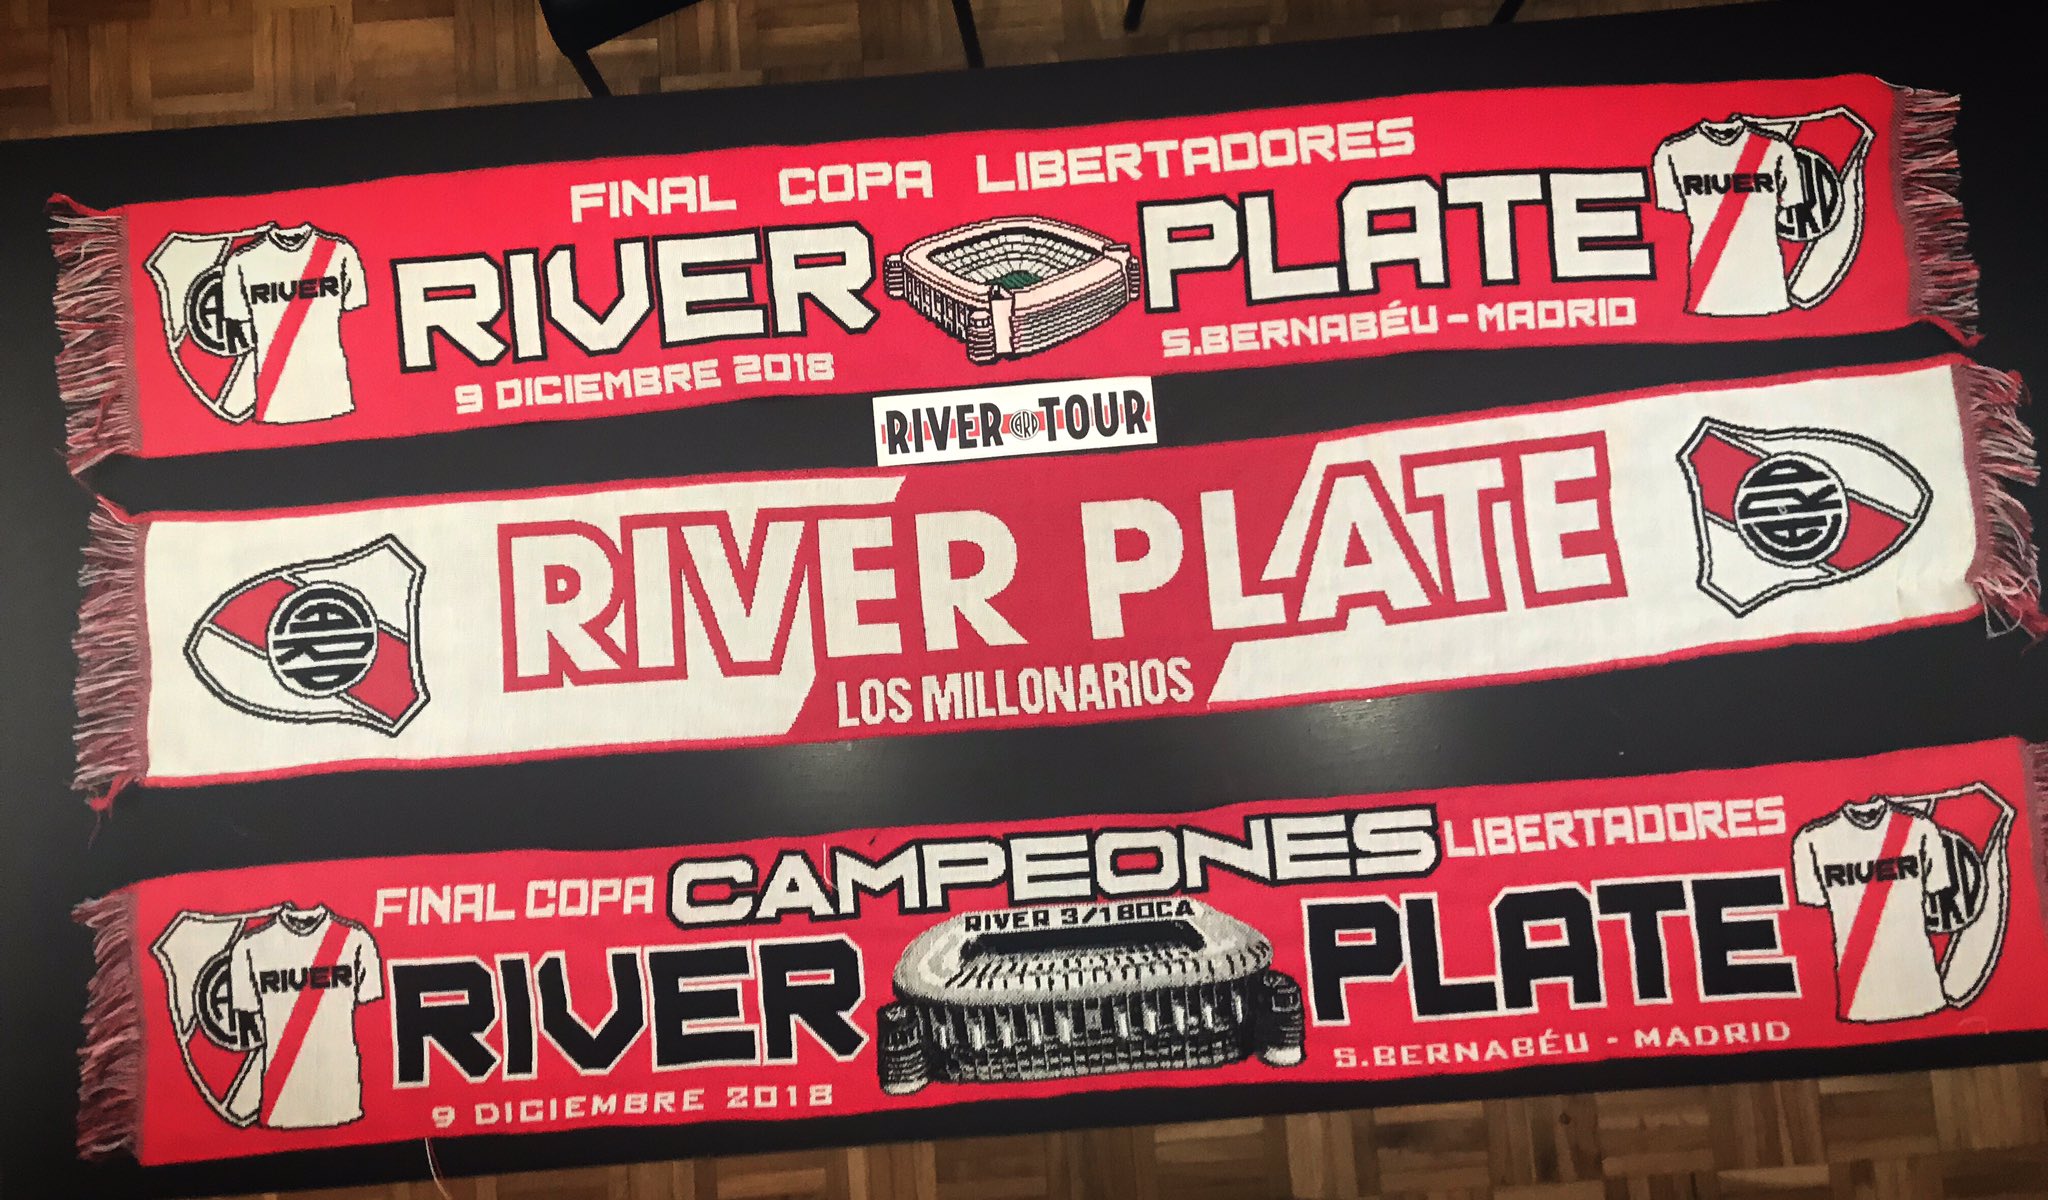 El River Tour on Twitter: "Estas son como siempre las bufandas del campeón  🎶🎶 soy de #River y lo sigo a todos lados... https://t.co/QB6foS0F5G" /  Twitter